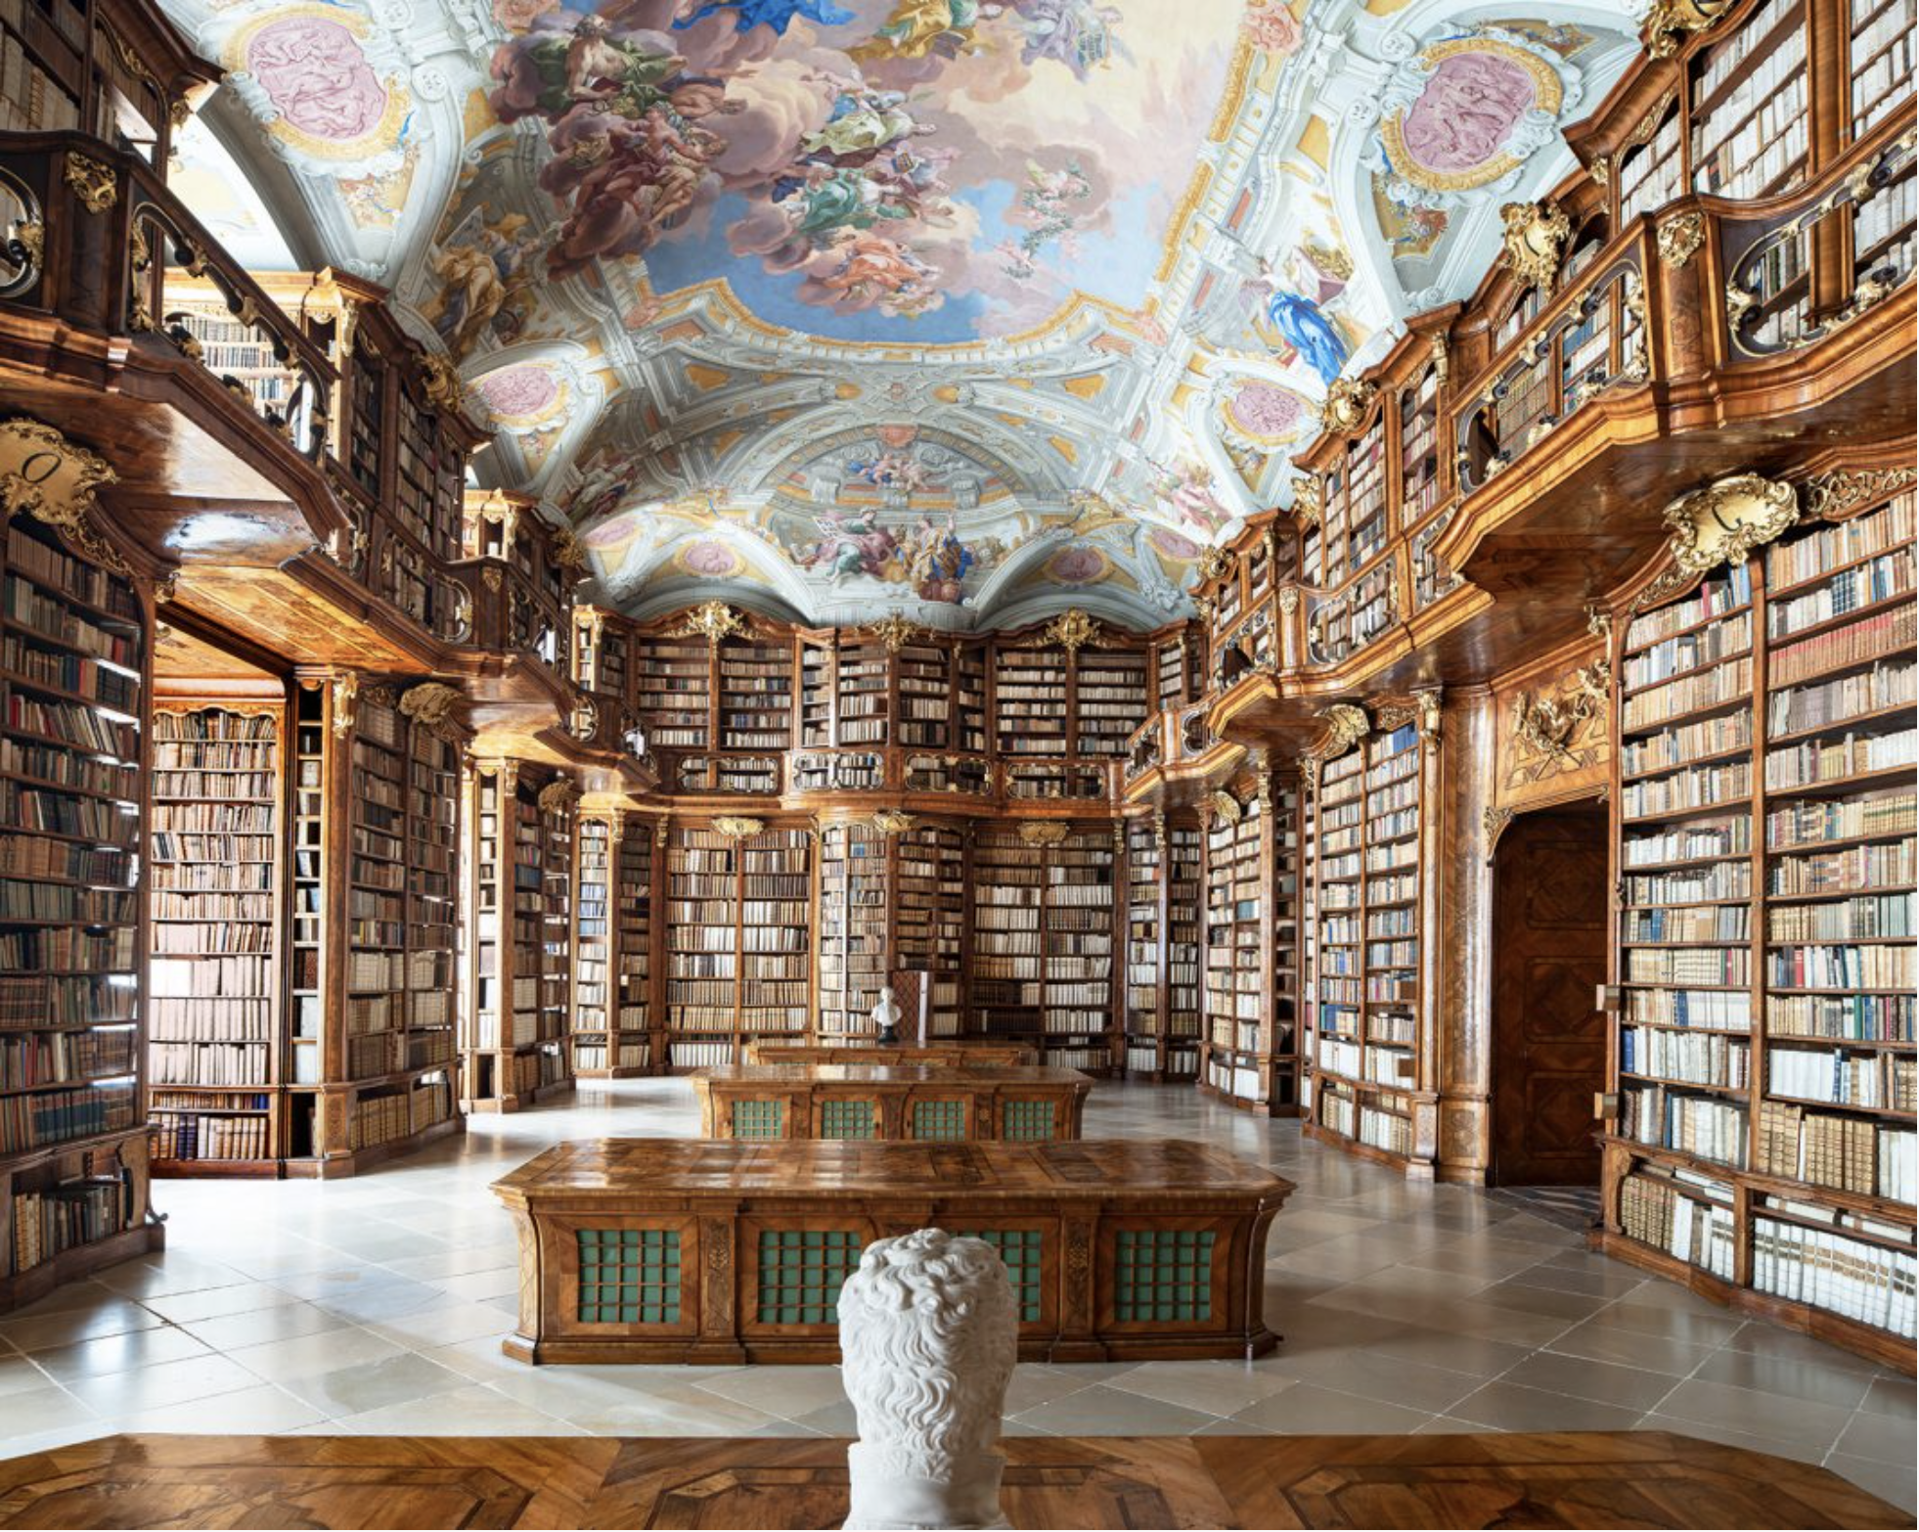 St. Florian Abbey Library, Austria by Reinhard Gorner